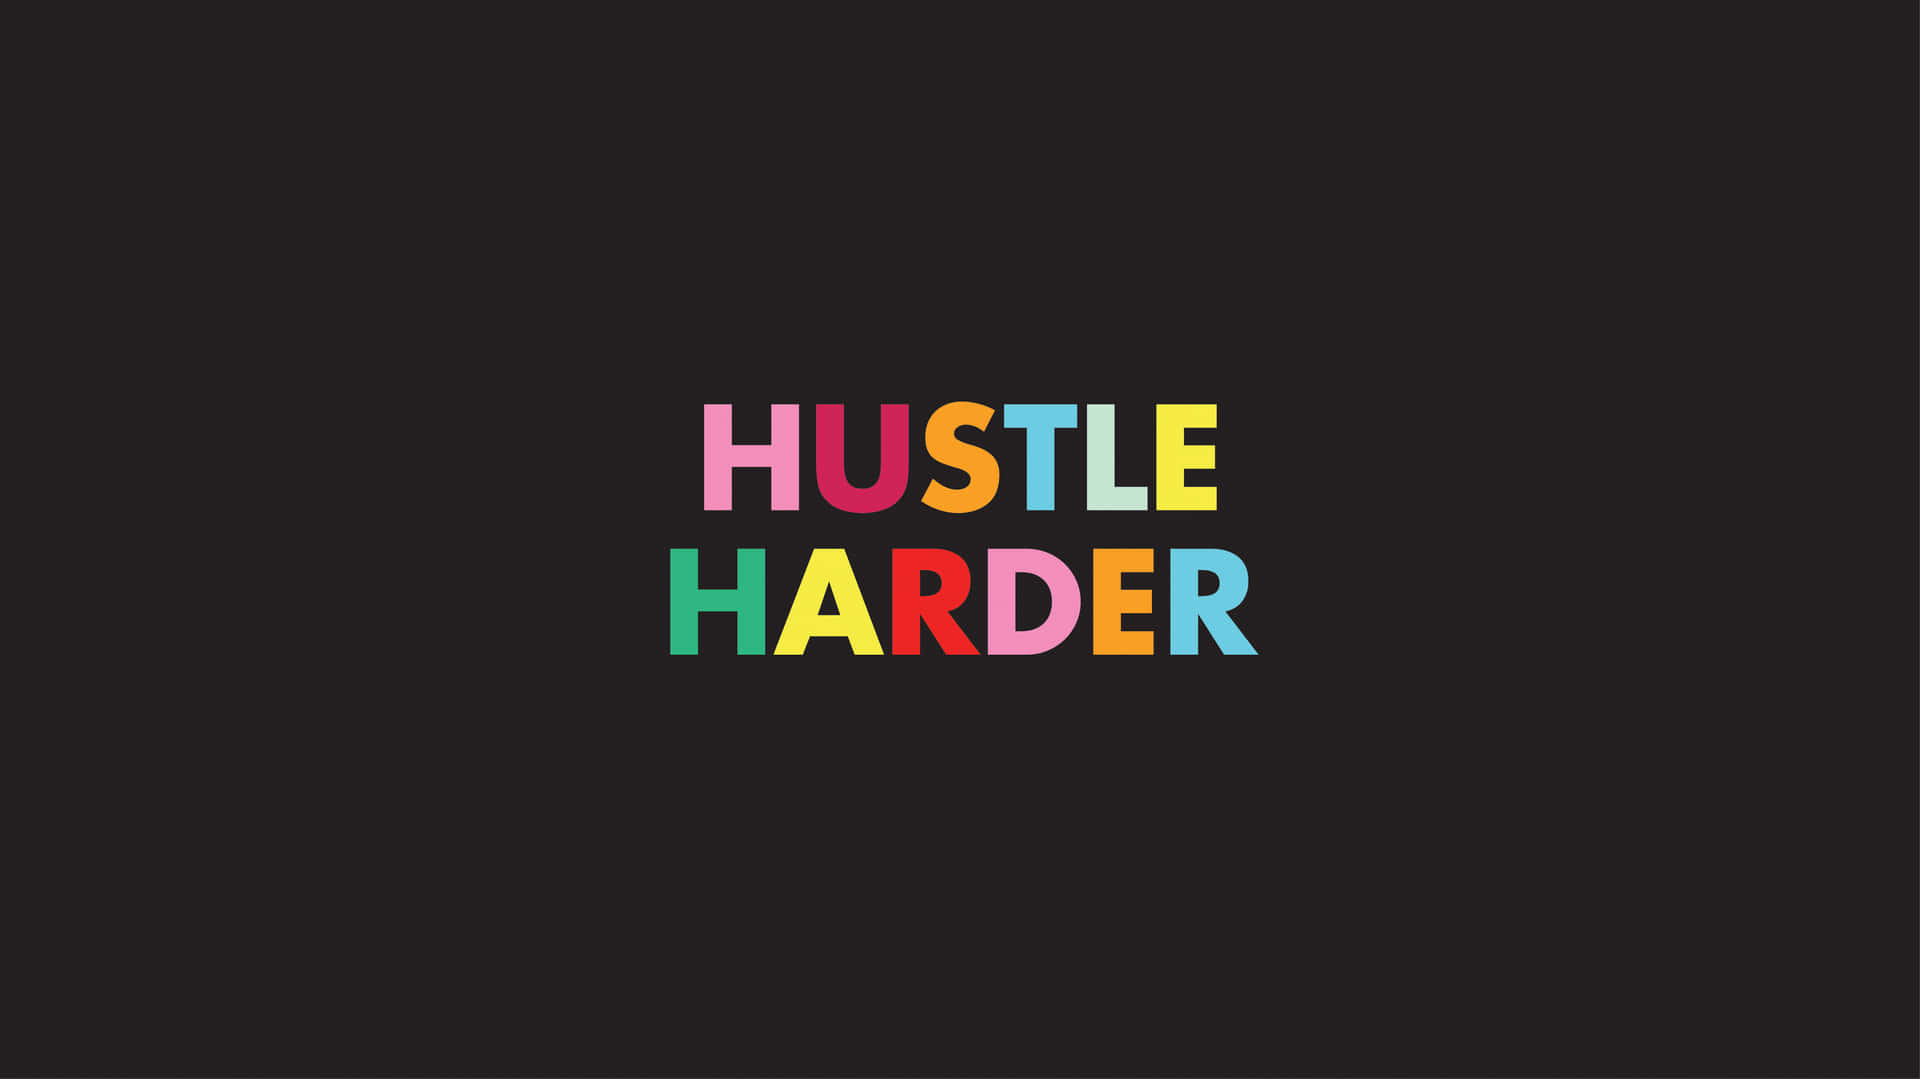 Føl kraften i Hustler's ikoniske branding. Wallpaper